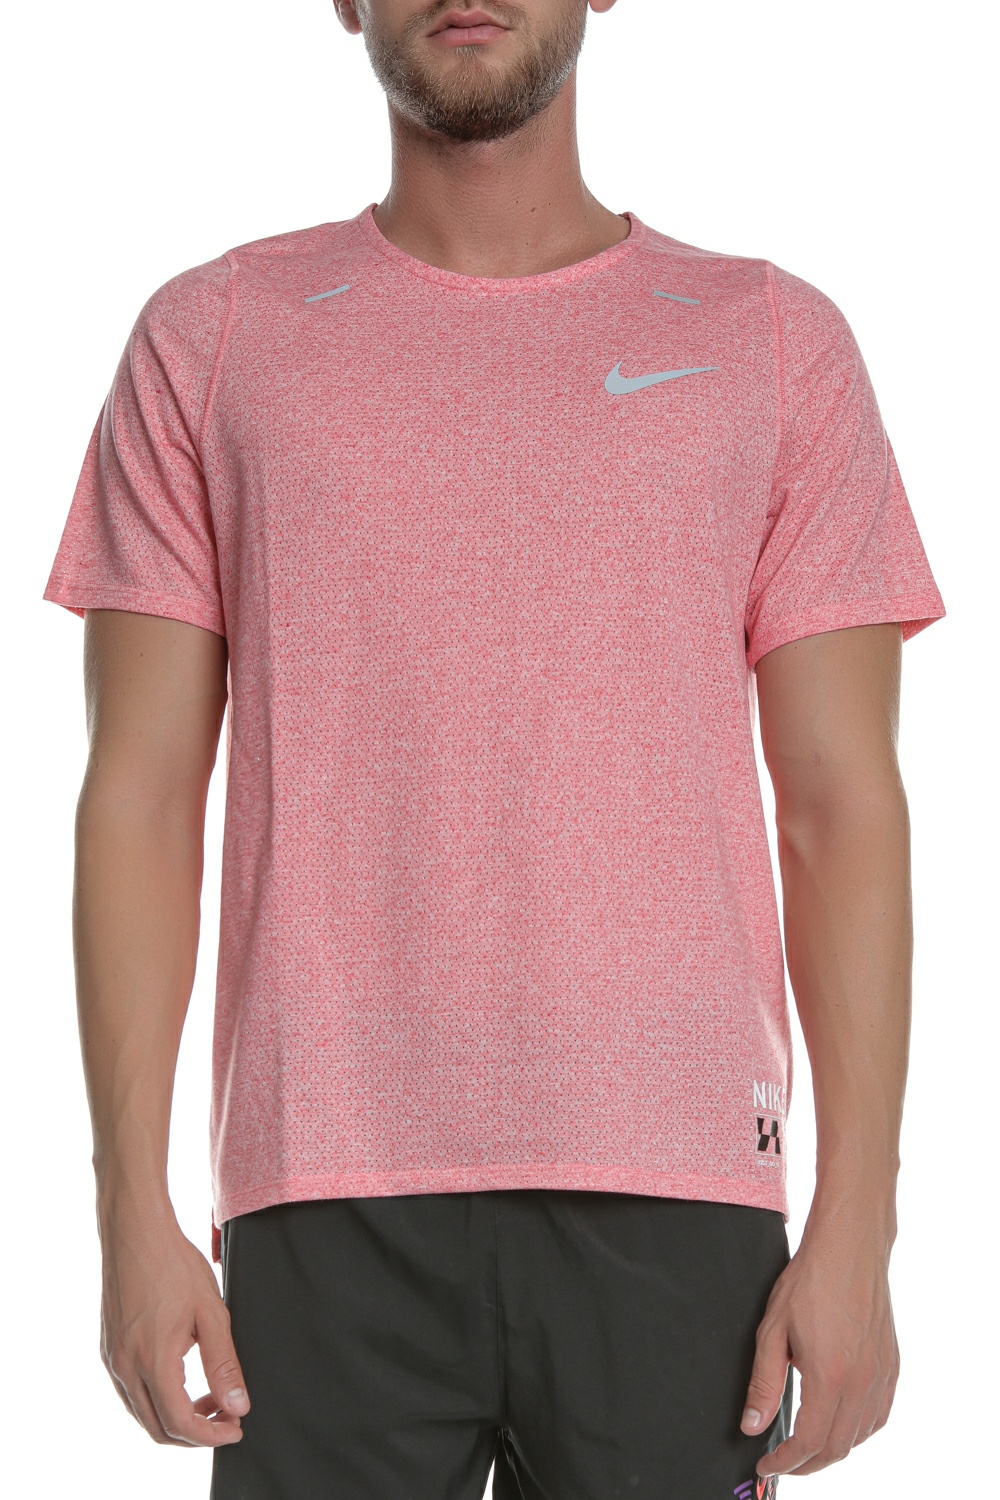 NIKE - Ανδρική αθλητική μπλούζα NIKE DF BRTH RISE 365 SS FF GX ροζ